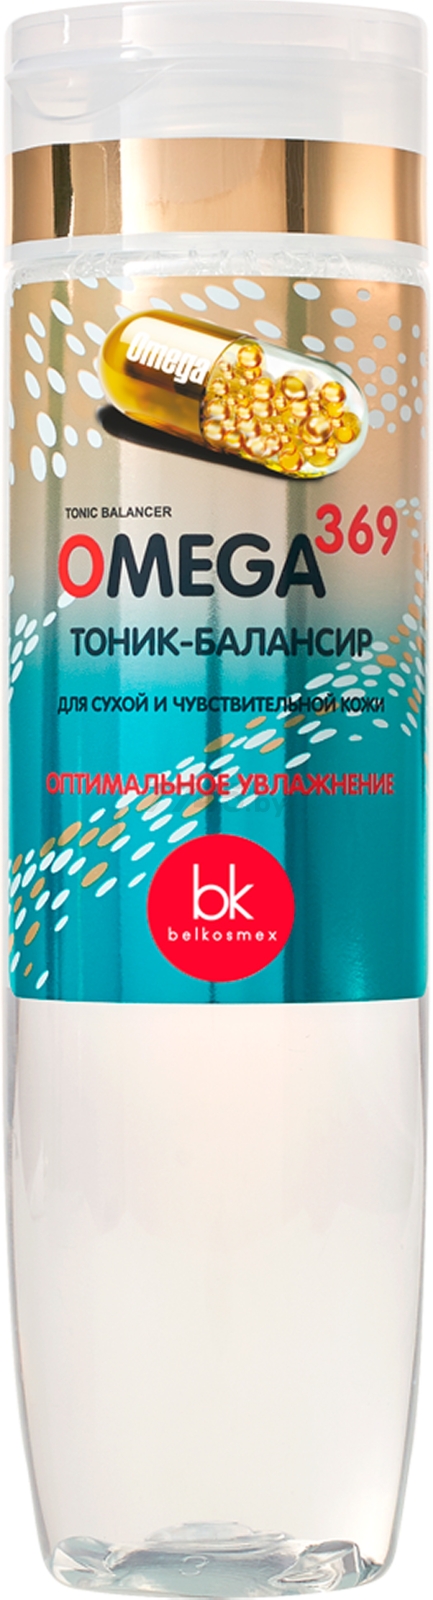 Тоник-балансир BELKOSMEX Omega 369 Для сухой и чувствительной кожи 200 мл (4810090009960)